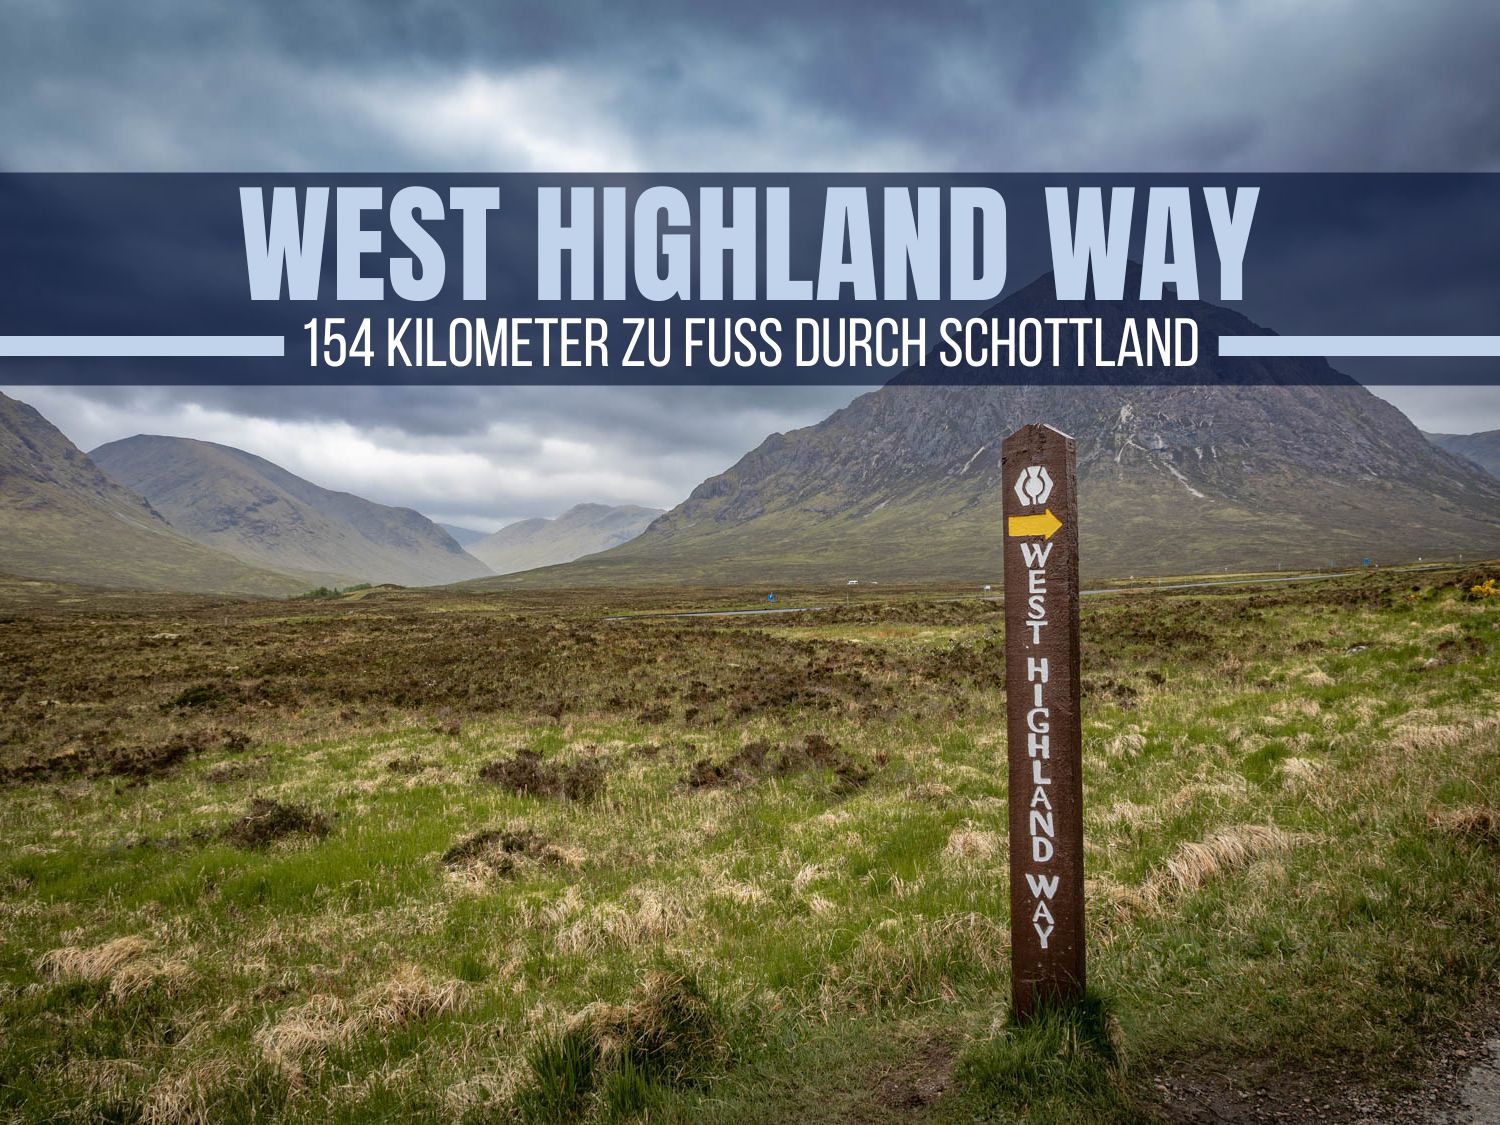 West Highland Way: 154 Kilometer zu Fuß durch Schottland